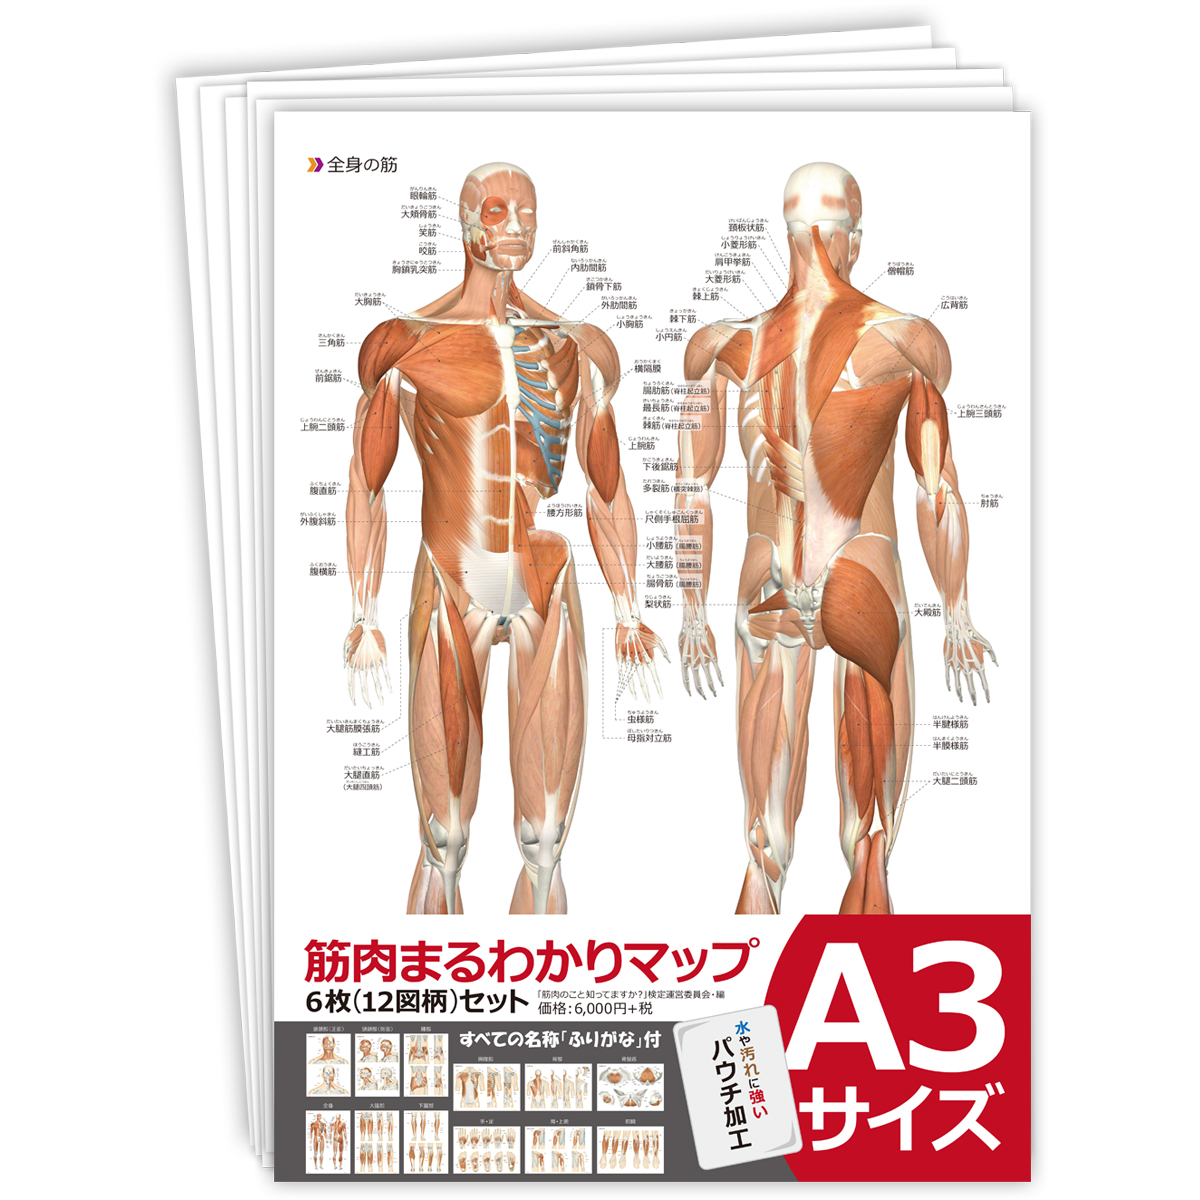 楽天市場 ジグソーパズル 全身の筋肉 日本語名称付 筋肉ジグソーパズル B4サイズ 4ピース 送料無料 キャンペーン 筋肉家